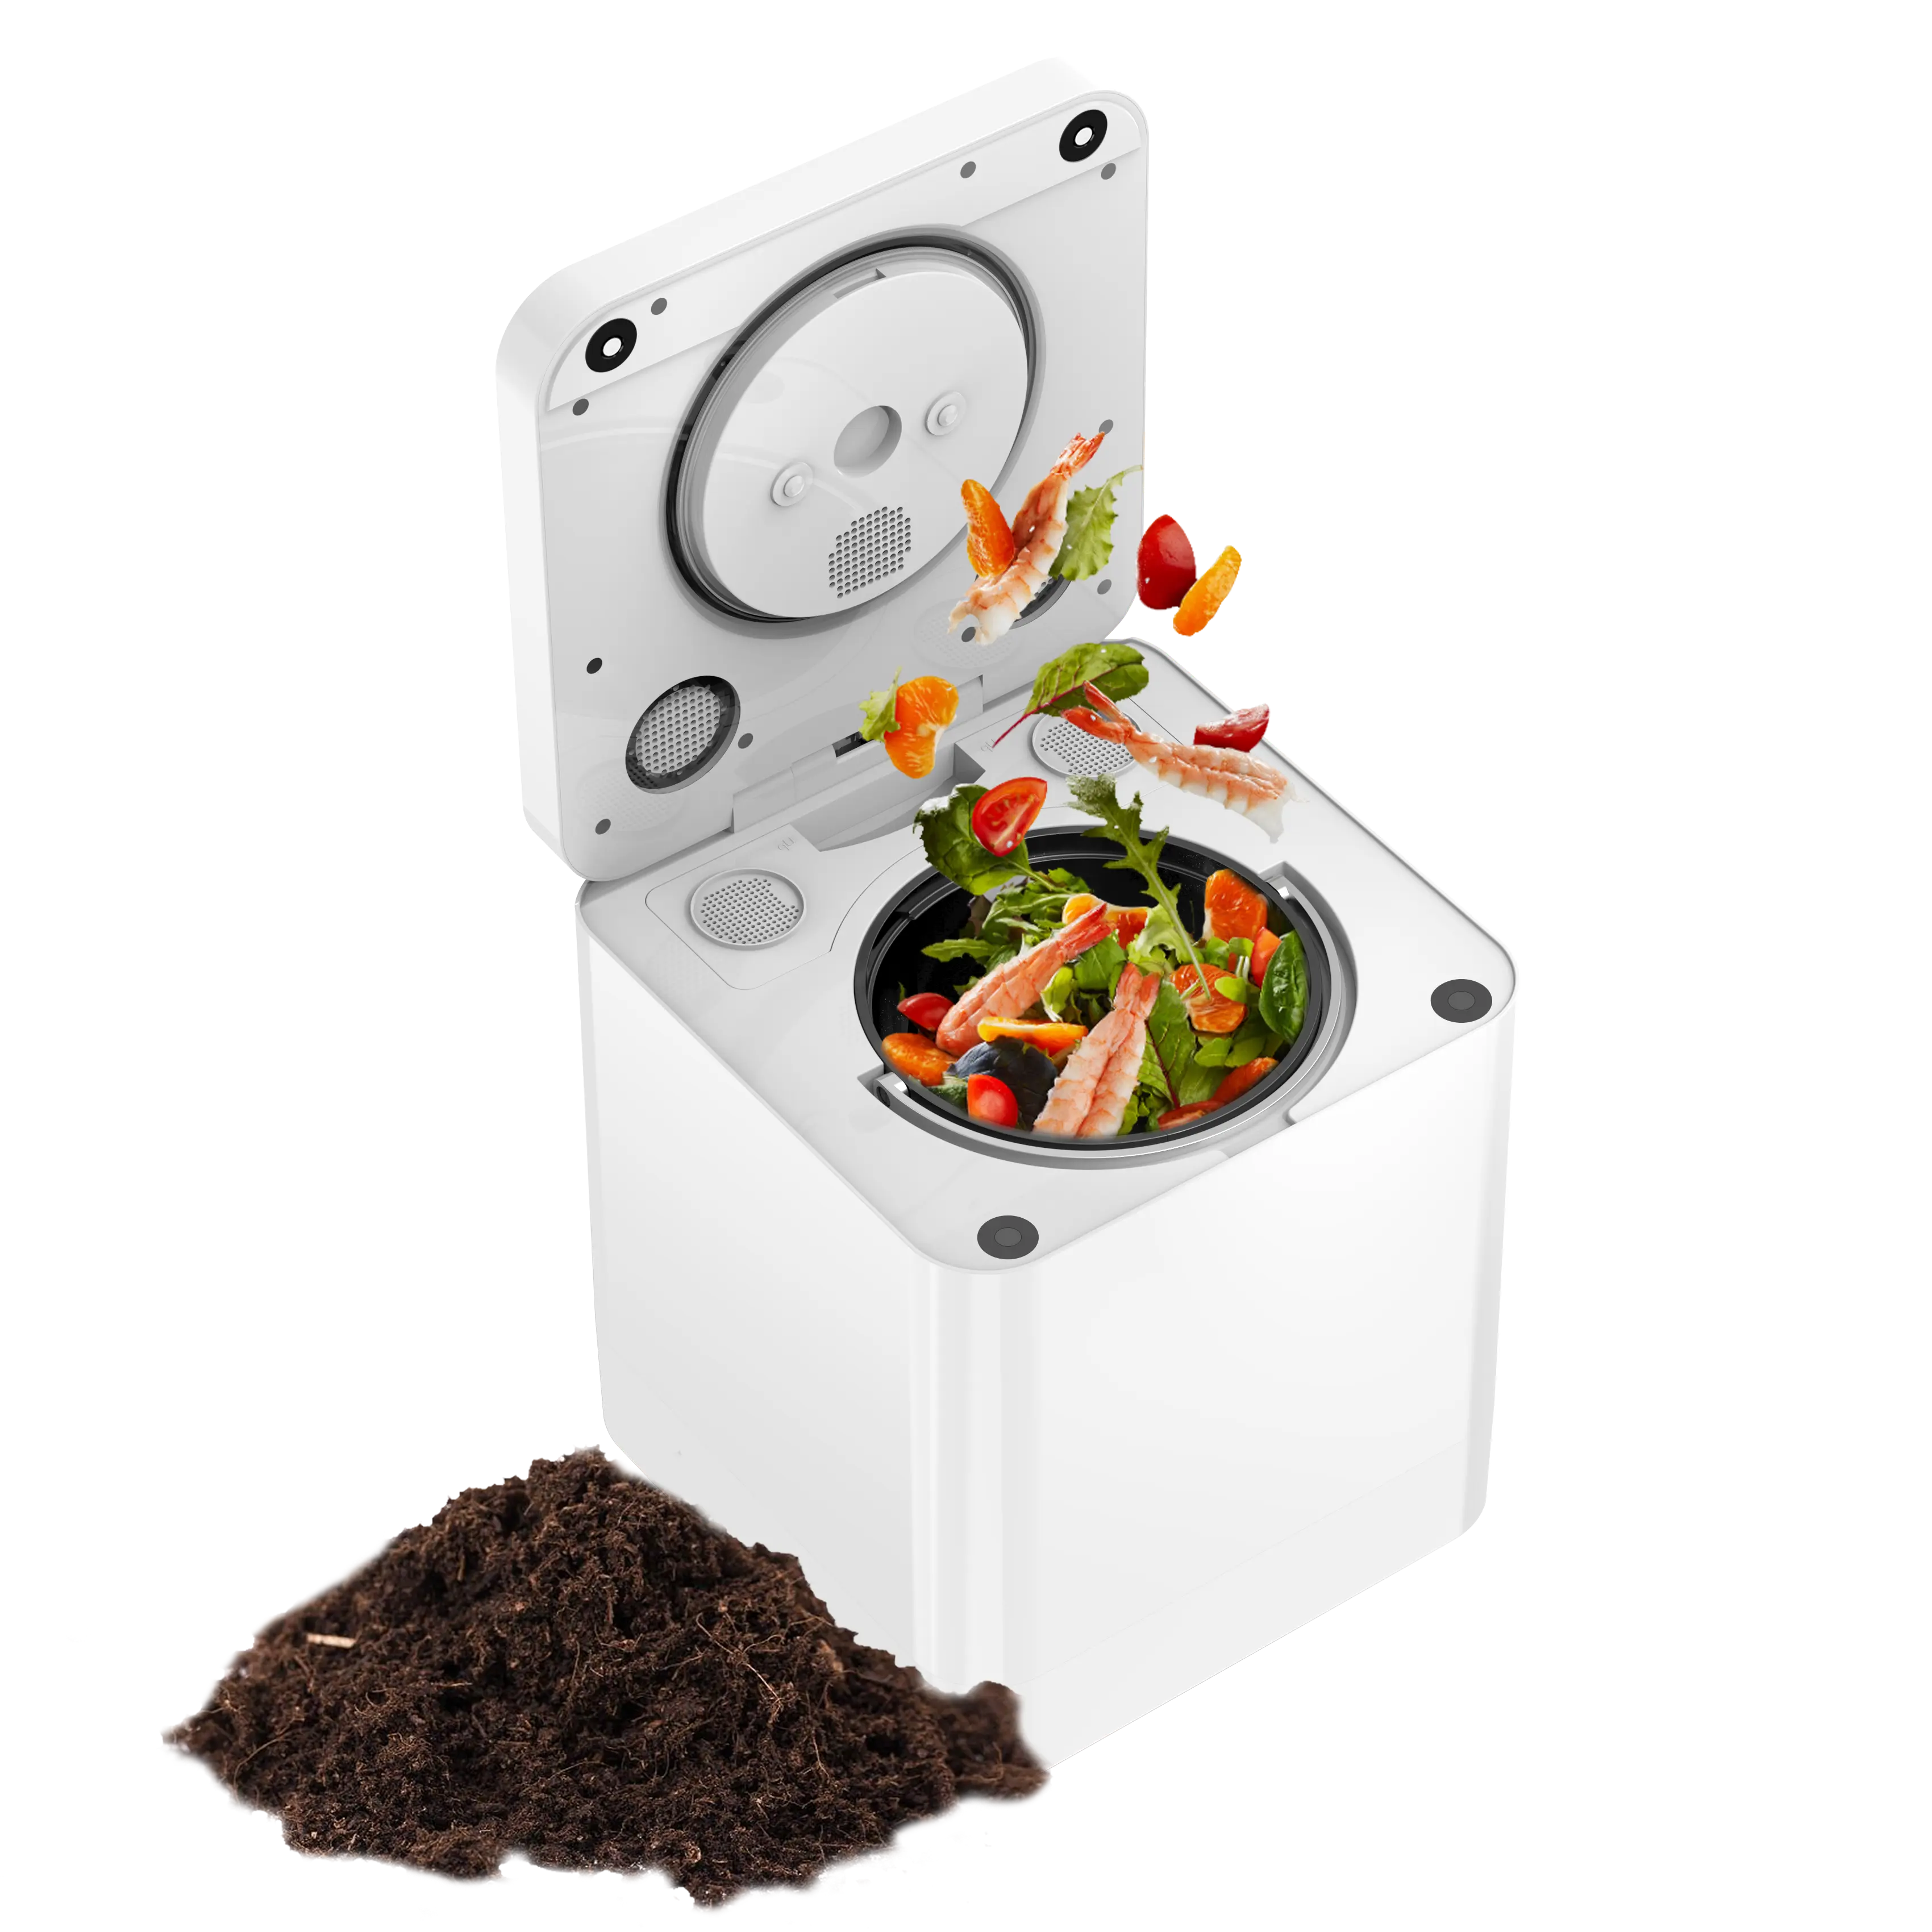 El compostador de eliminación de basura y alimentos de cocina inteligente Hotsale convierte los residuos en compost con un botón